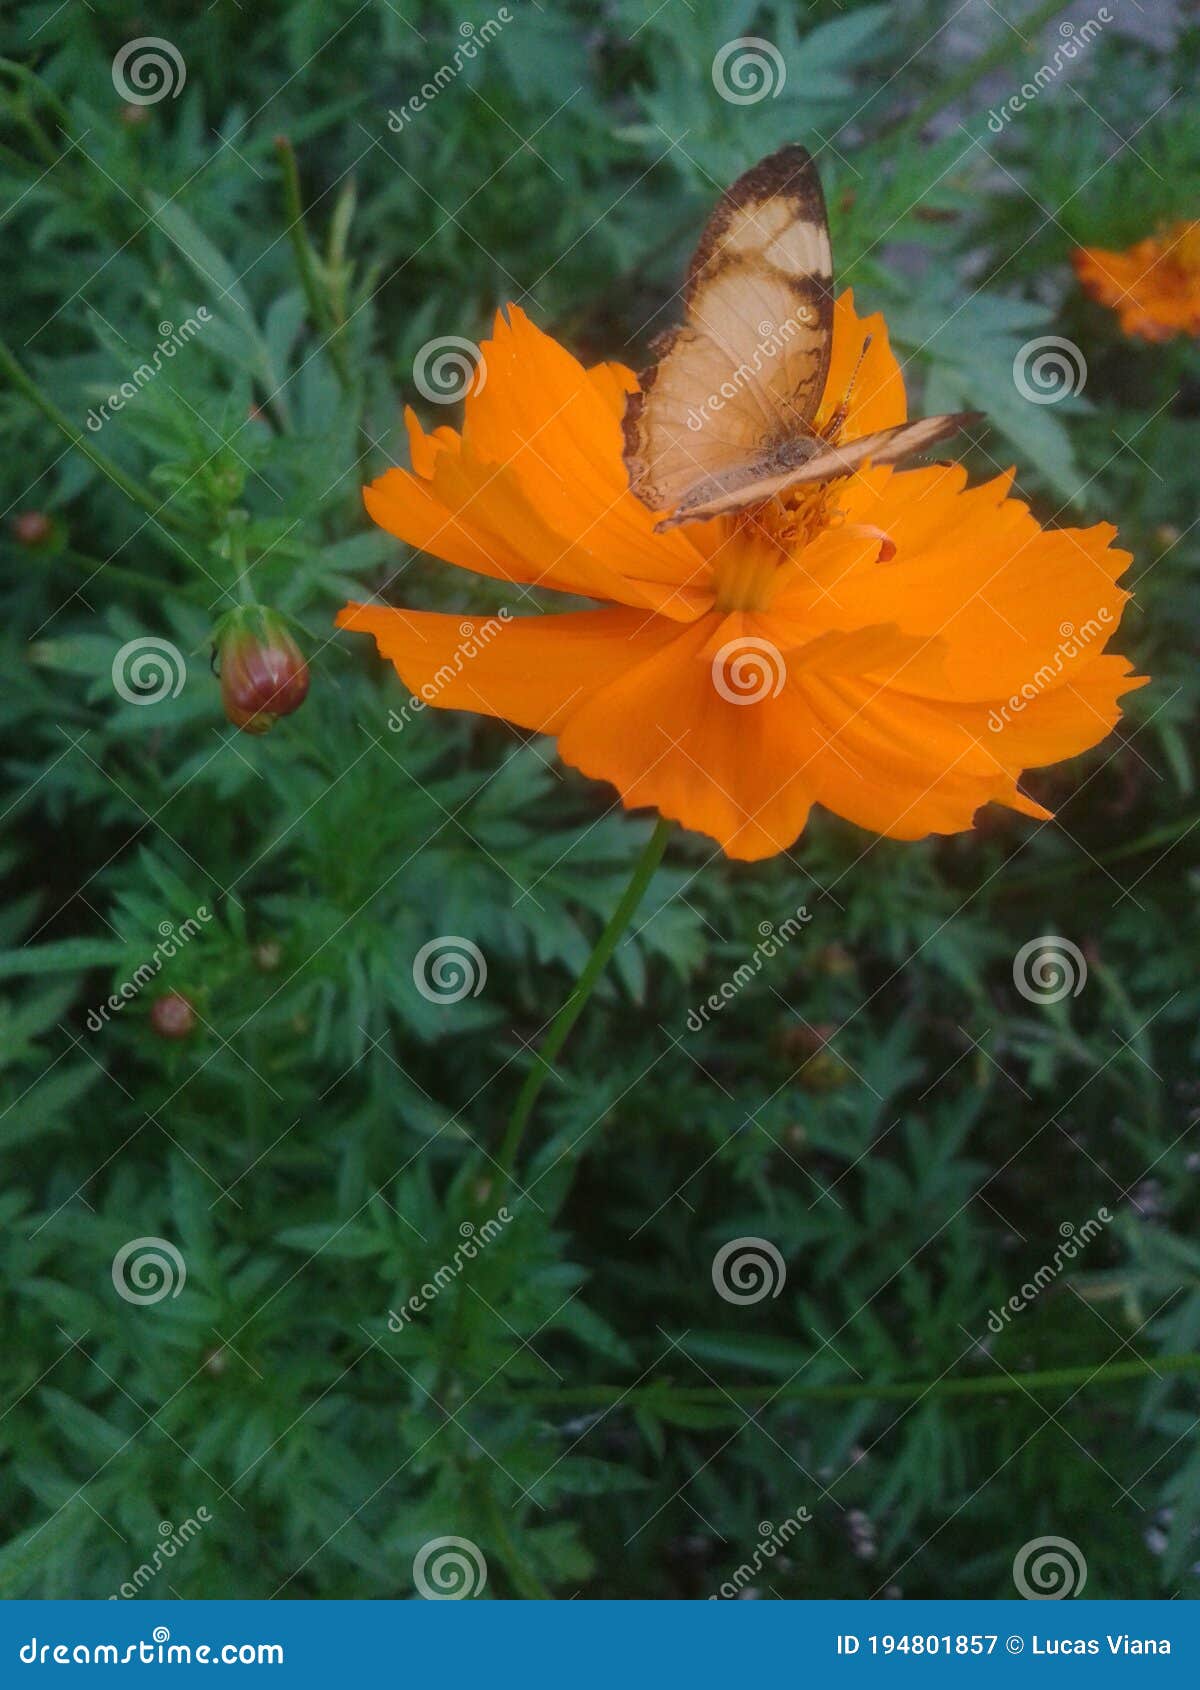 butterfly borboleta flower